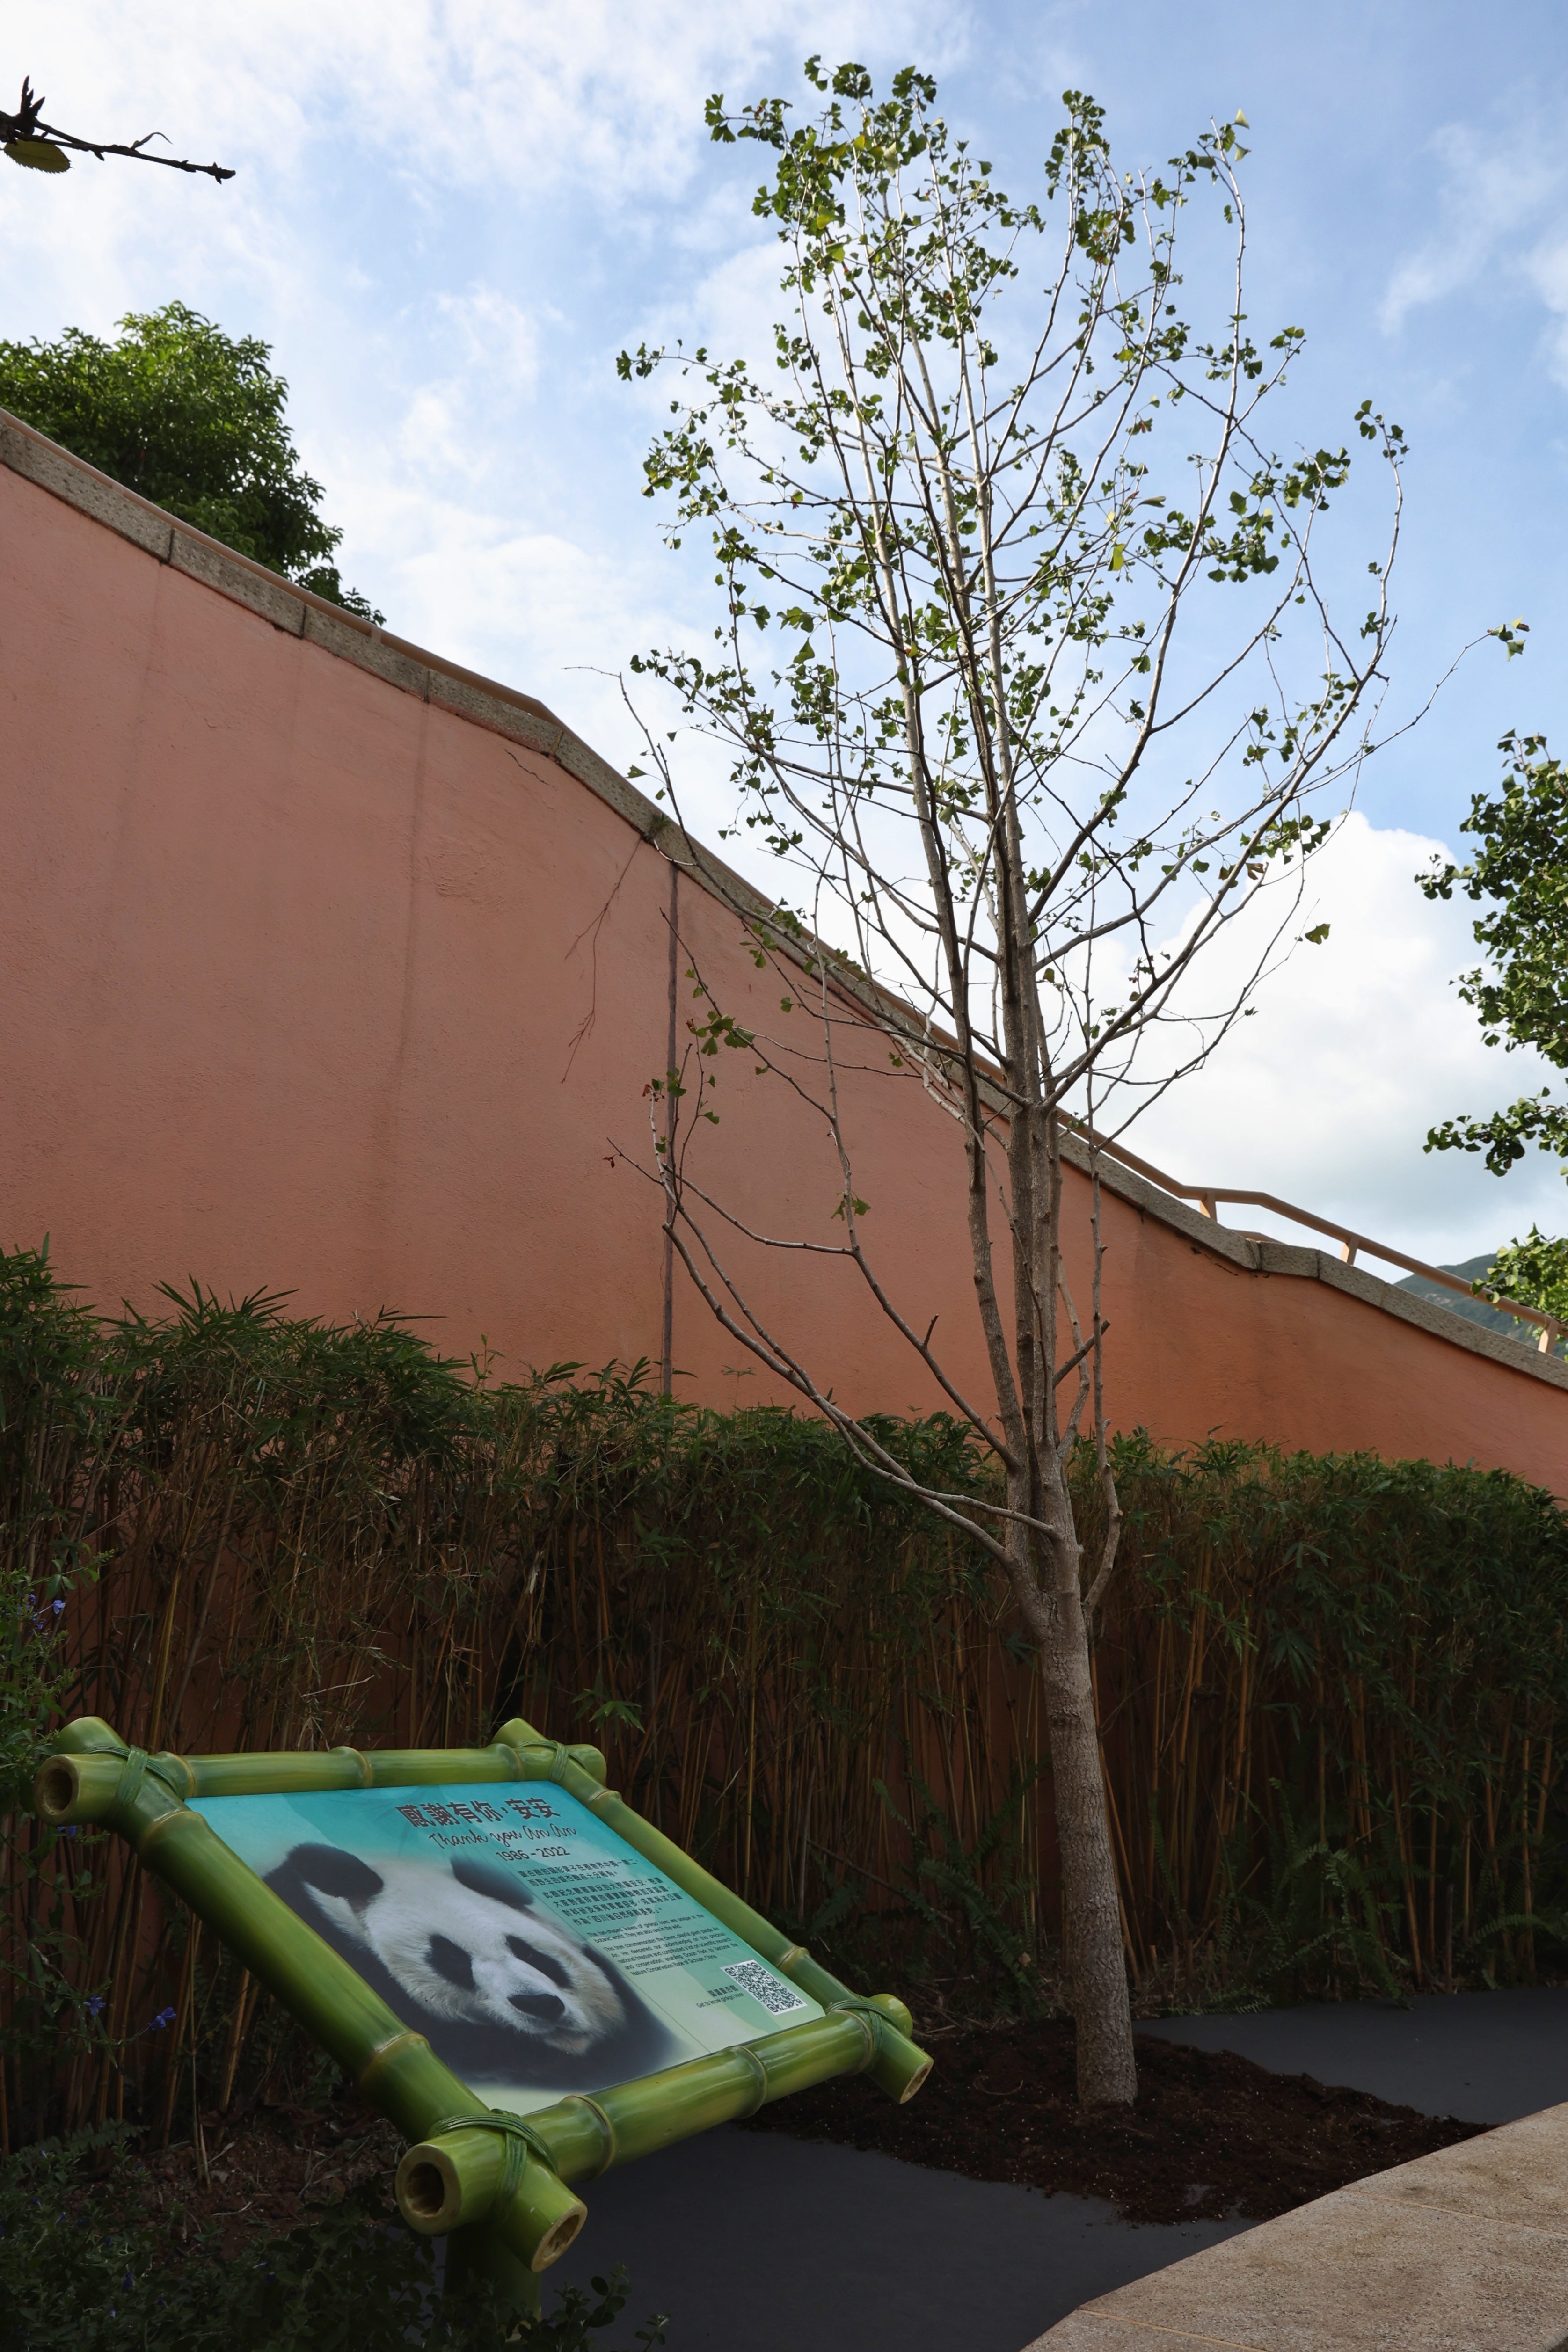 大熊猫安安的骨灰9月28日放在其故居海洋公园「香港赛马会四川奇珍馆」外新种植的银杏树下。（李泽彤摄）